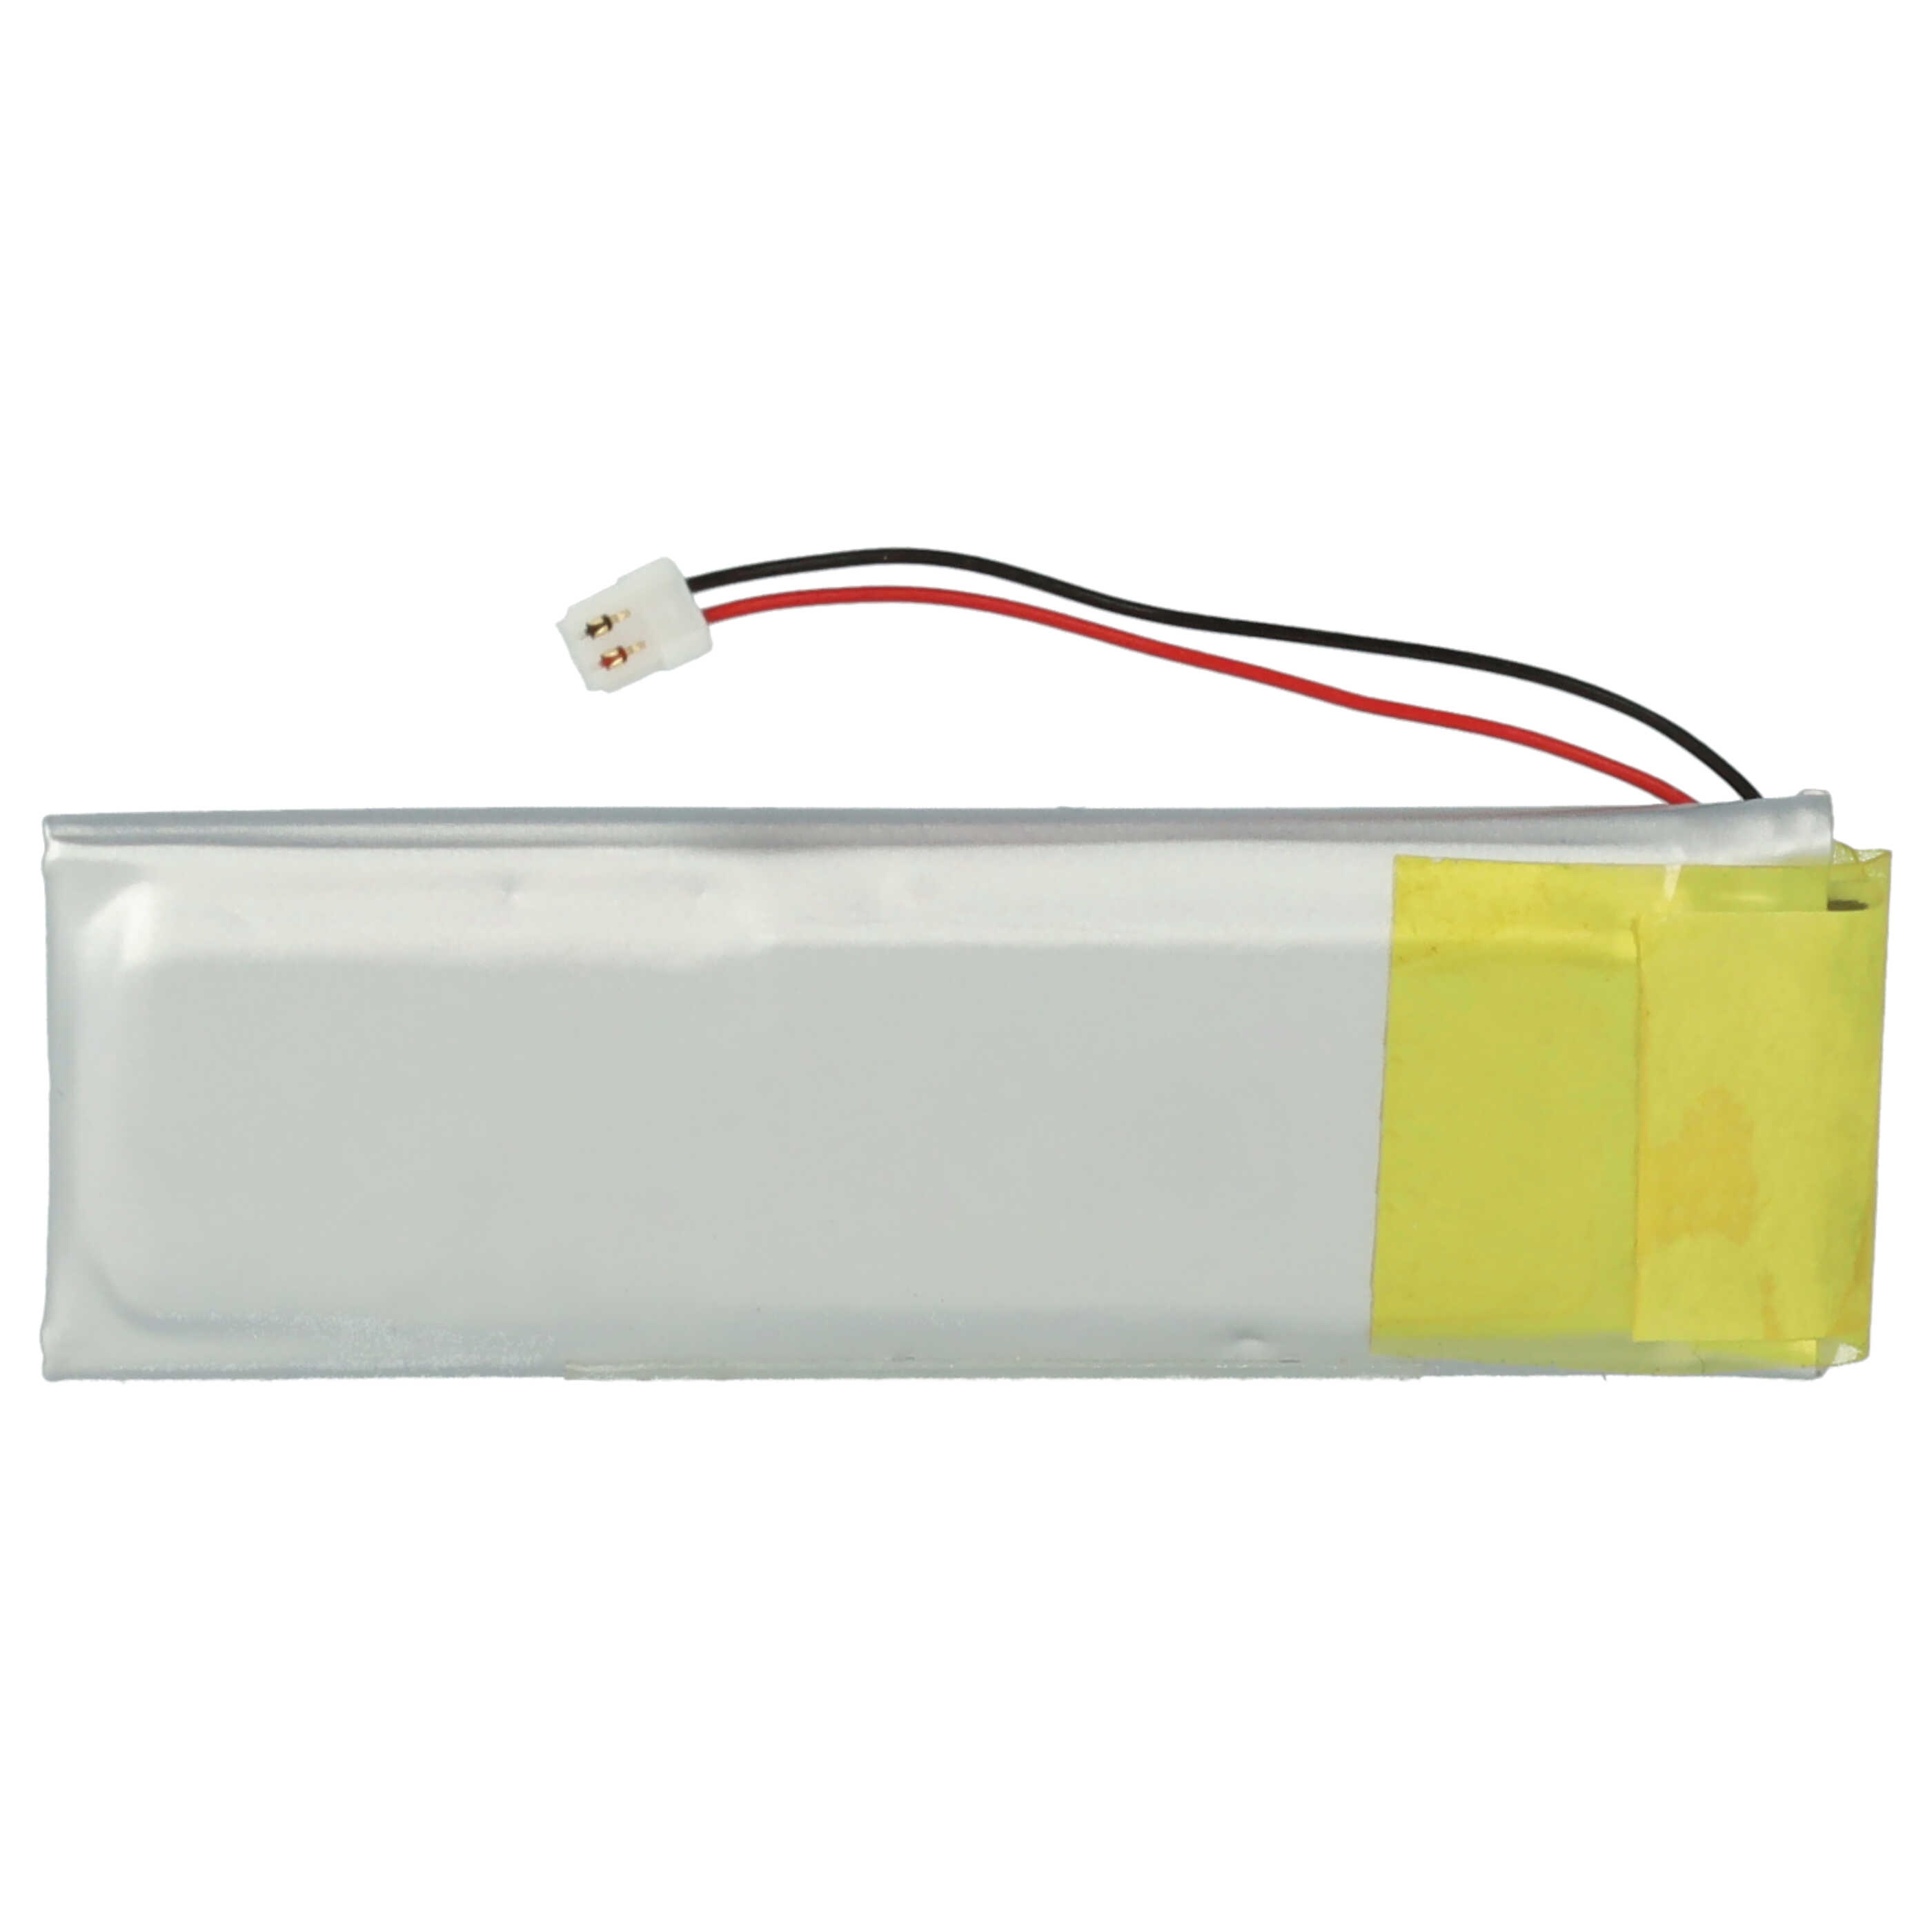 Batteria per auricolari cuffie wireless sostituisce Sena YT501542P Sena - 250mAh 3,7V Li-Poly